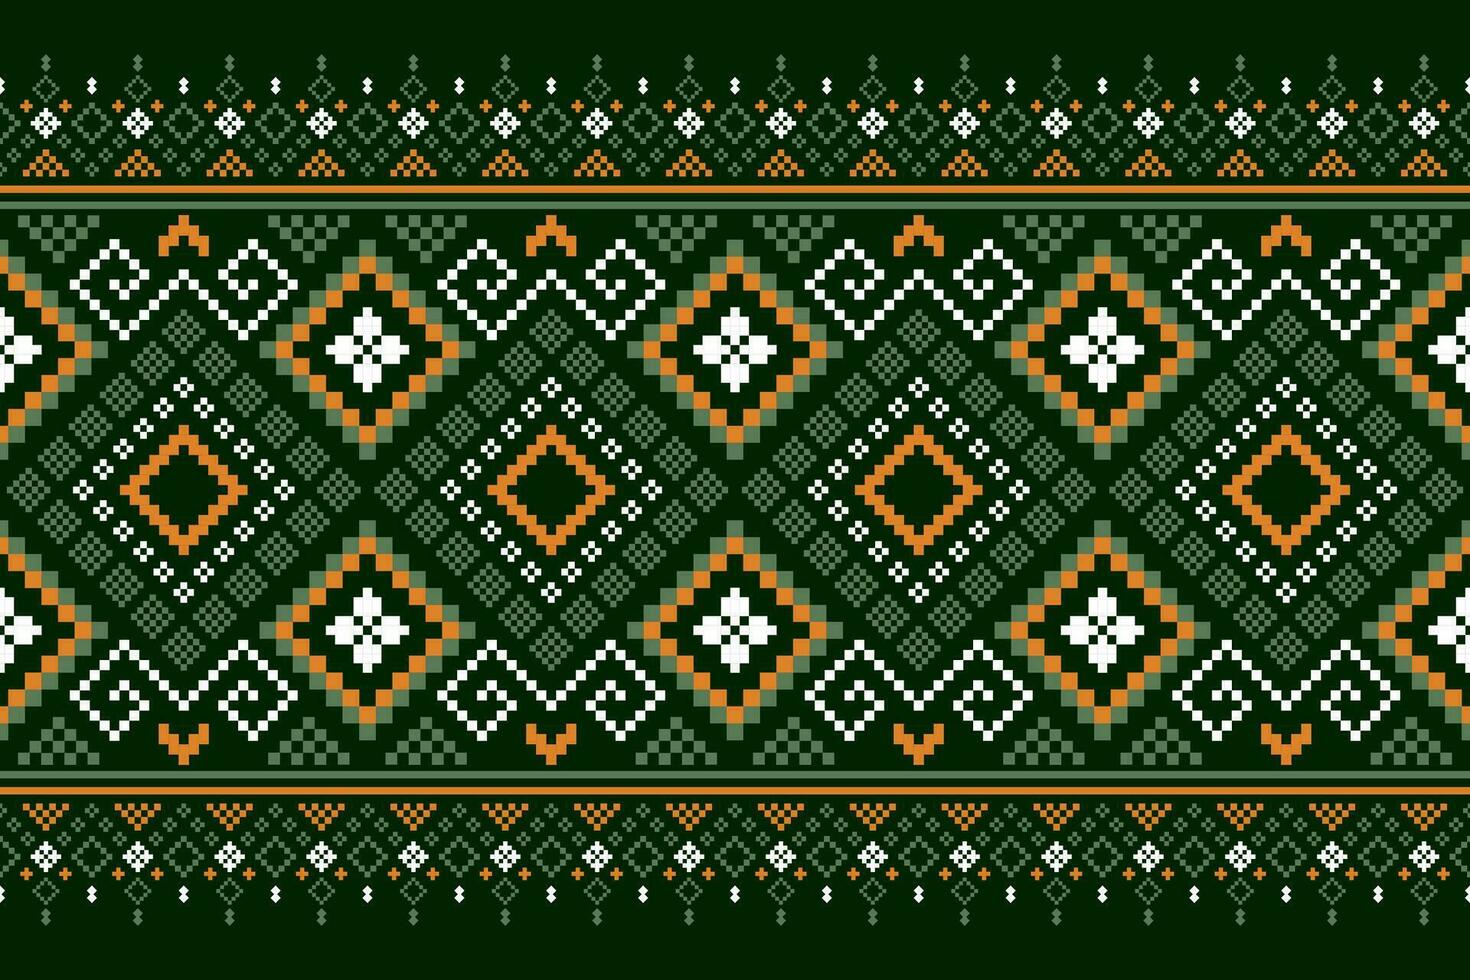 groen kruis steek kleurrijk meetkundig traditioneel etnisch patroon ikat naadloos patroon grens abstract ontwerp voor kleding stof afdrukken kleding jurk tapijt gordijnen en sarong aztec Afrikaanse Indisch Indonesisch vector